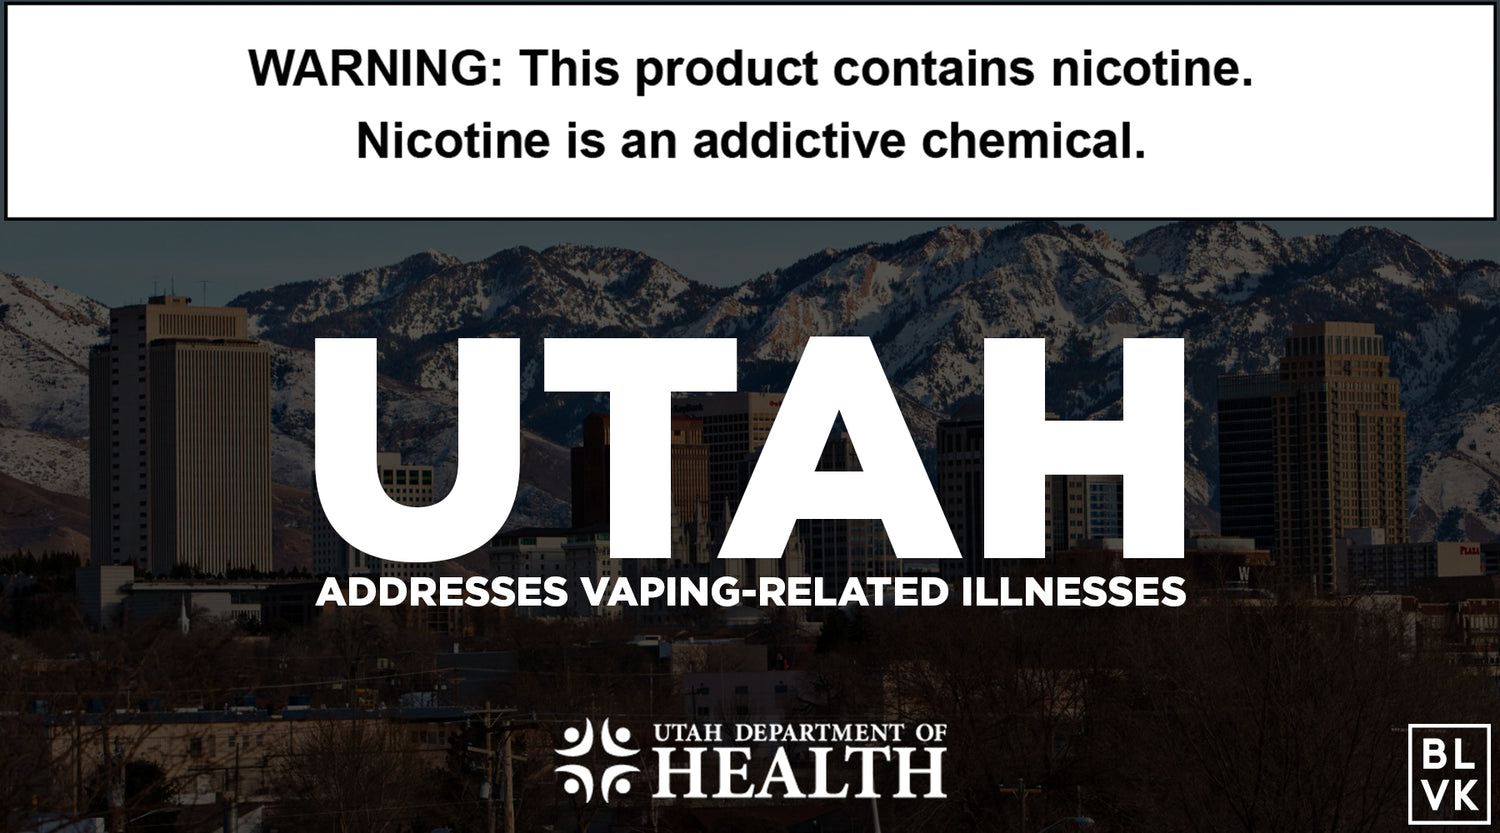 Utah Addresses Vaping-Related Illnesses